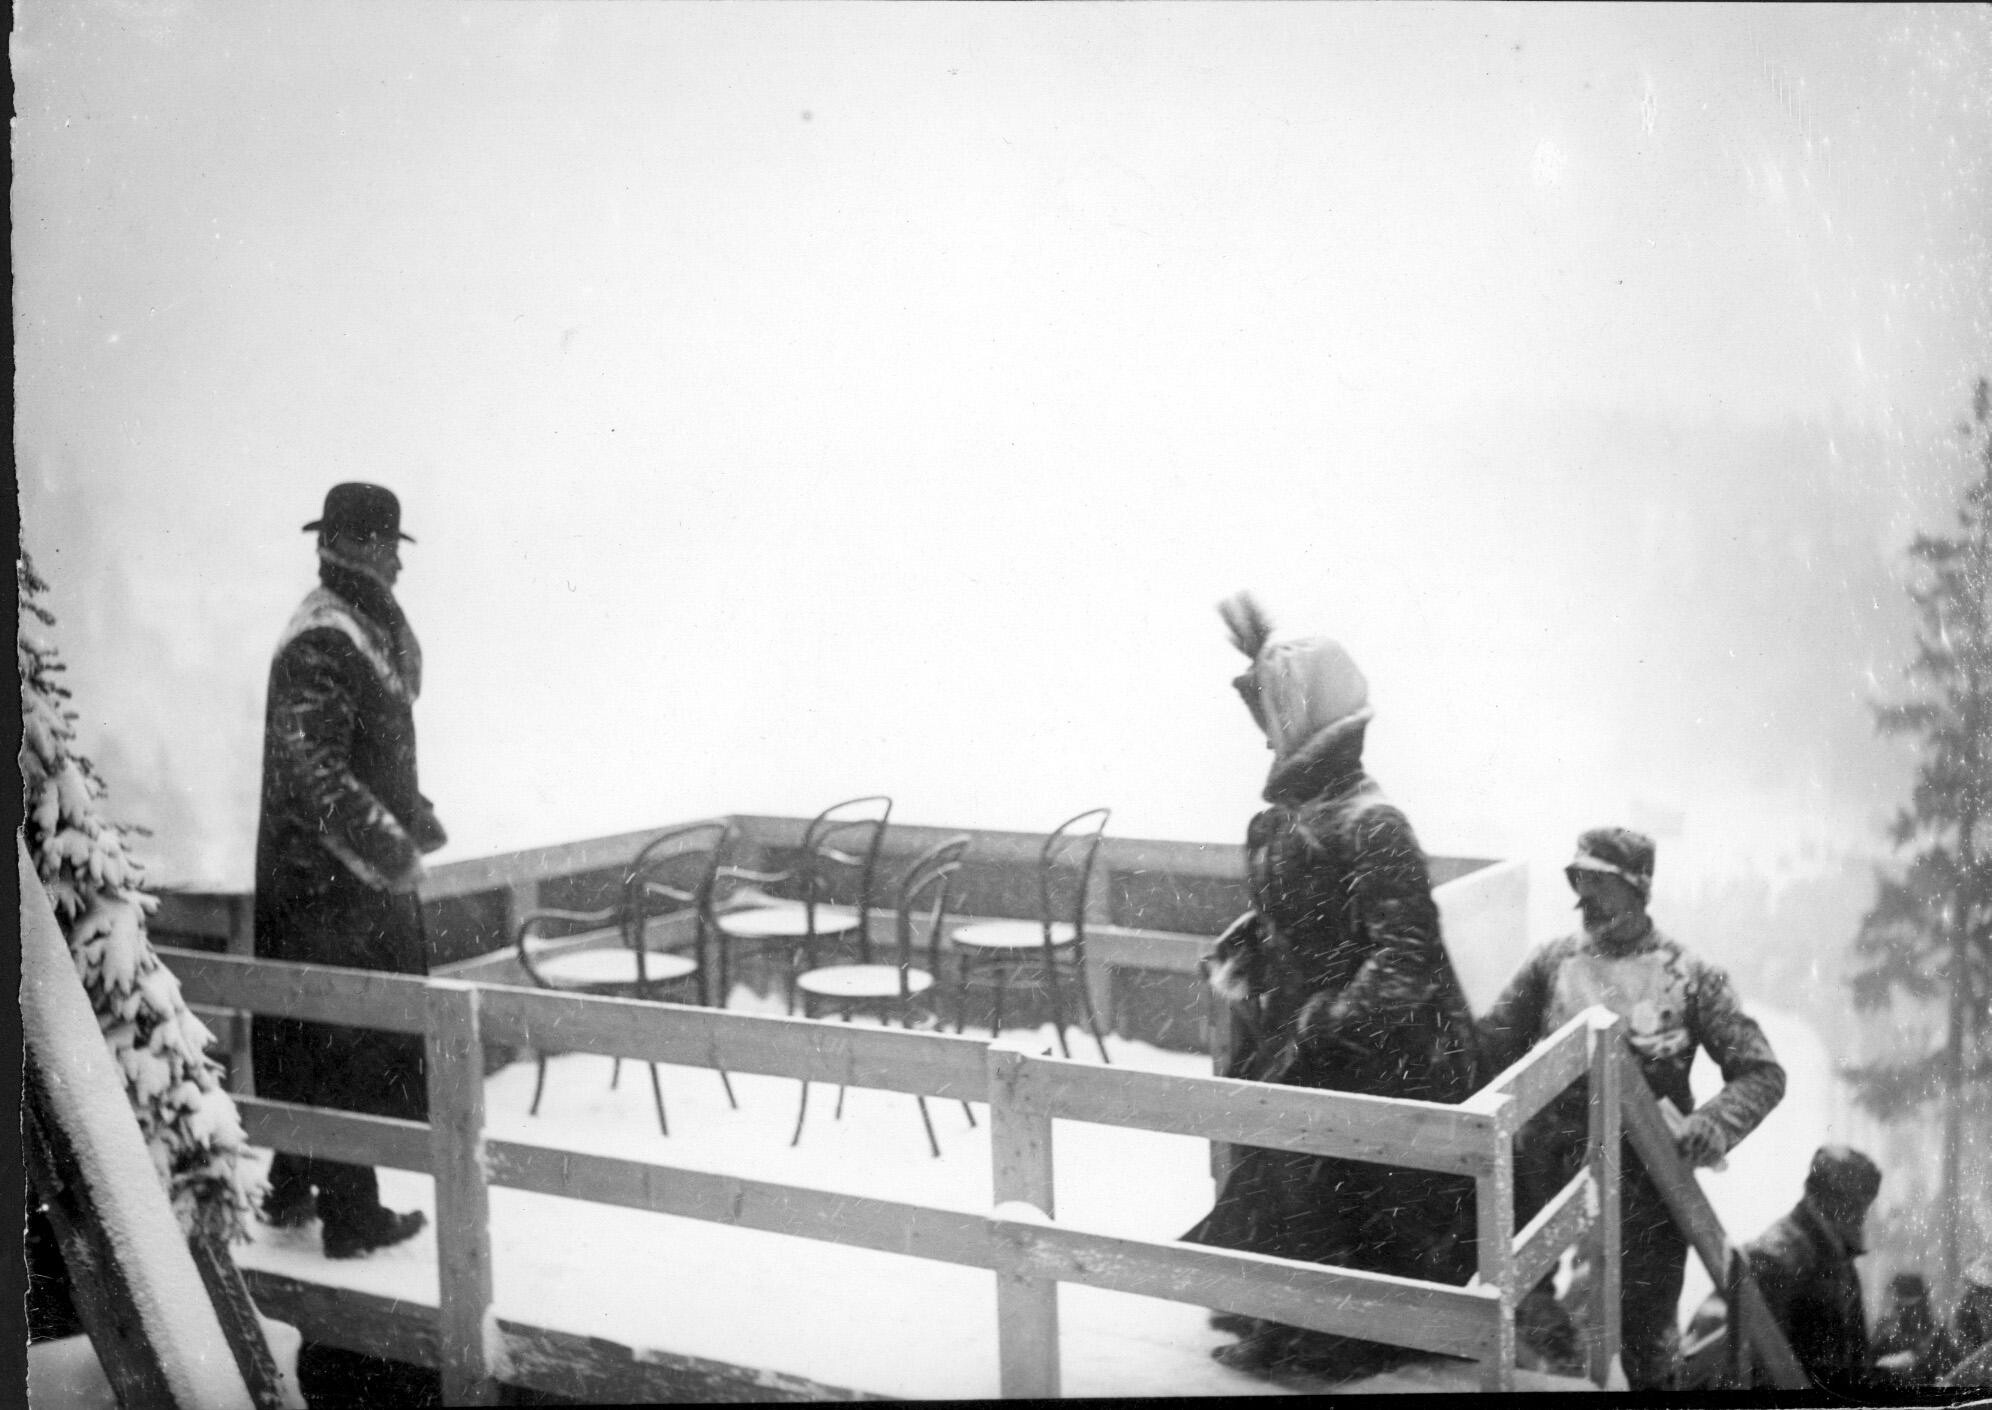 Король с королевой занимают свои места на королевской трибуне. Хольменколлен, Норвегия, 1906. Фотограф Северин Ворм-Петерсен